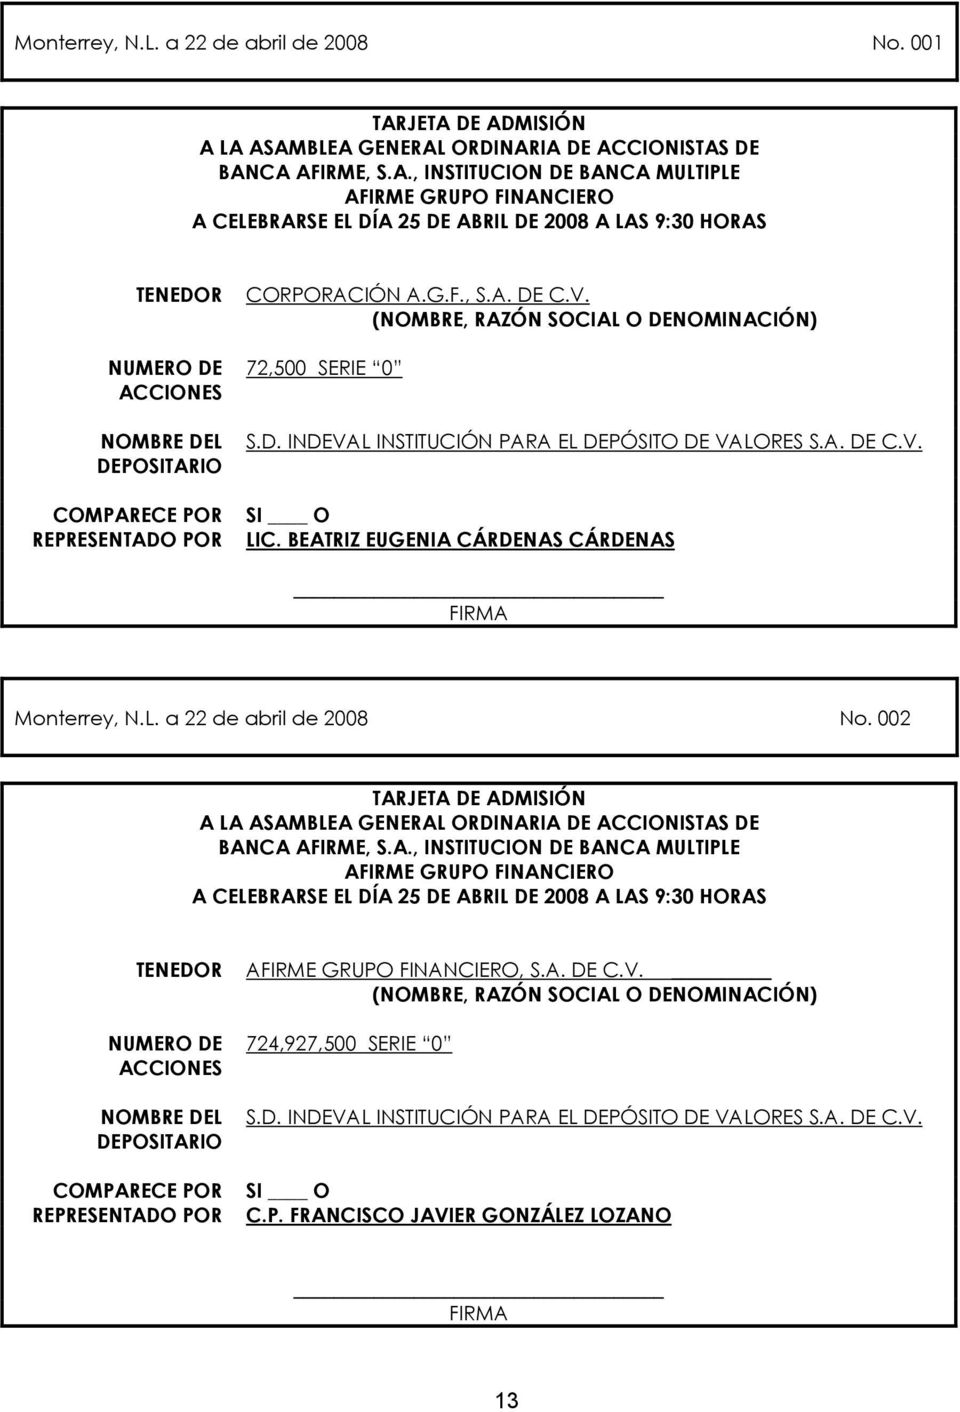 TENEDOR NUMERO DE ACCIONES NOMBRE DEL DEPOSITARIO COMPARECE POR REPRESENTADO POR CORPORACIÓN A.G.F., S.A. DE C.V. (NOMBRE, RAZÓN SOCIAL O DENOMINACIÓN) 72,500 SERIE 0 S.D. INDEVAL INSTITUCIÓN PARA EL DEPÓSITO DE VALORES S.